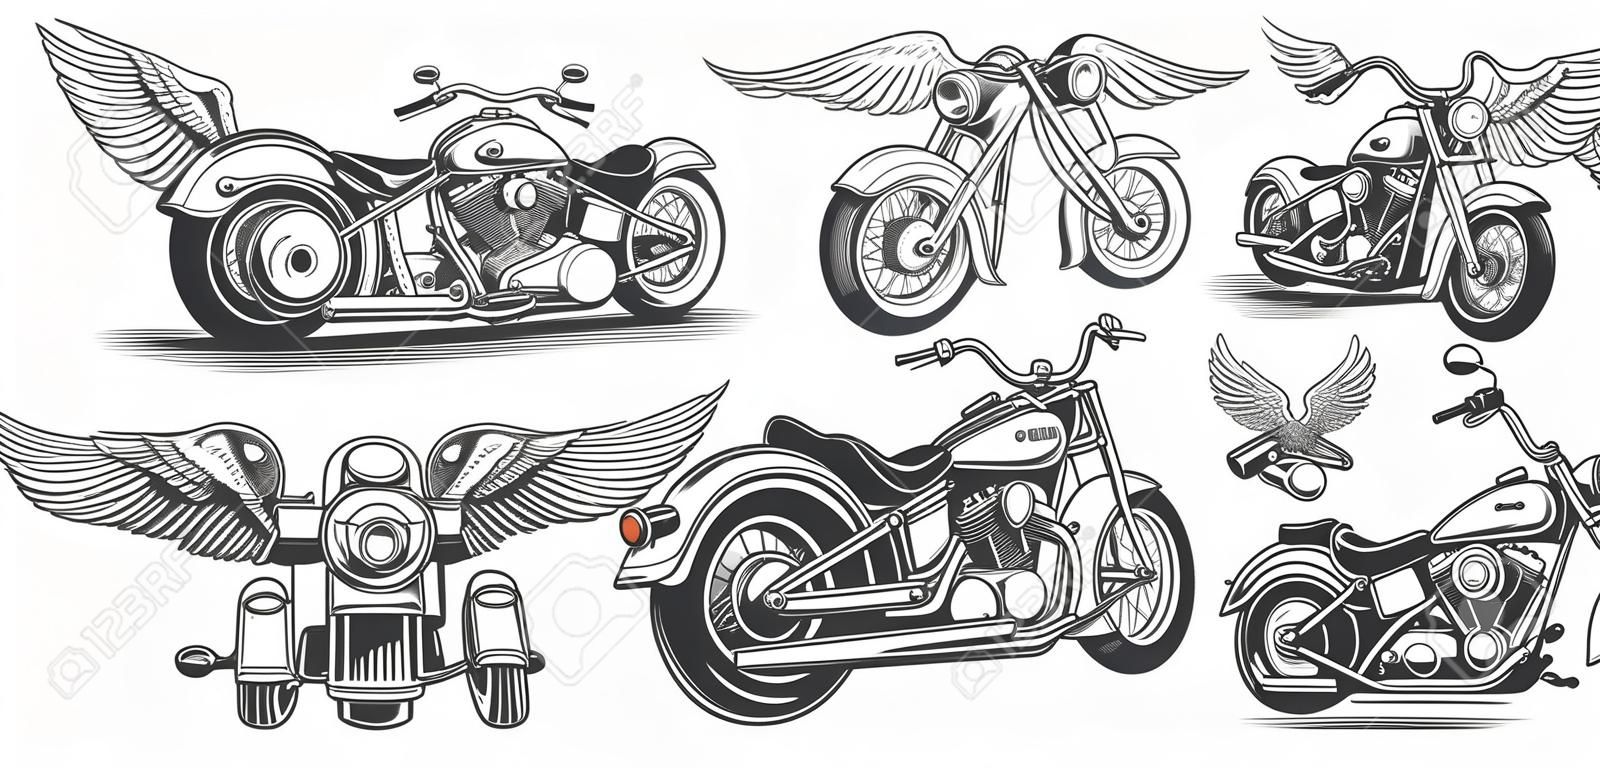 集插图，手绘老式摩托车各种角度的图标，头骨，雕刻风格的翅膀。墨迹样式的经典斩波器。印刷，雕刻，模板，设计元素